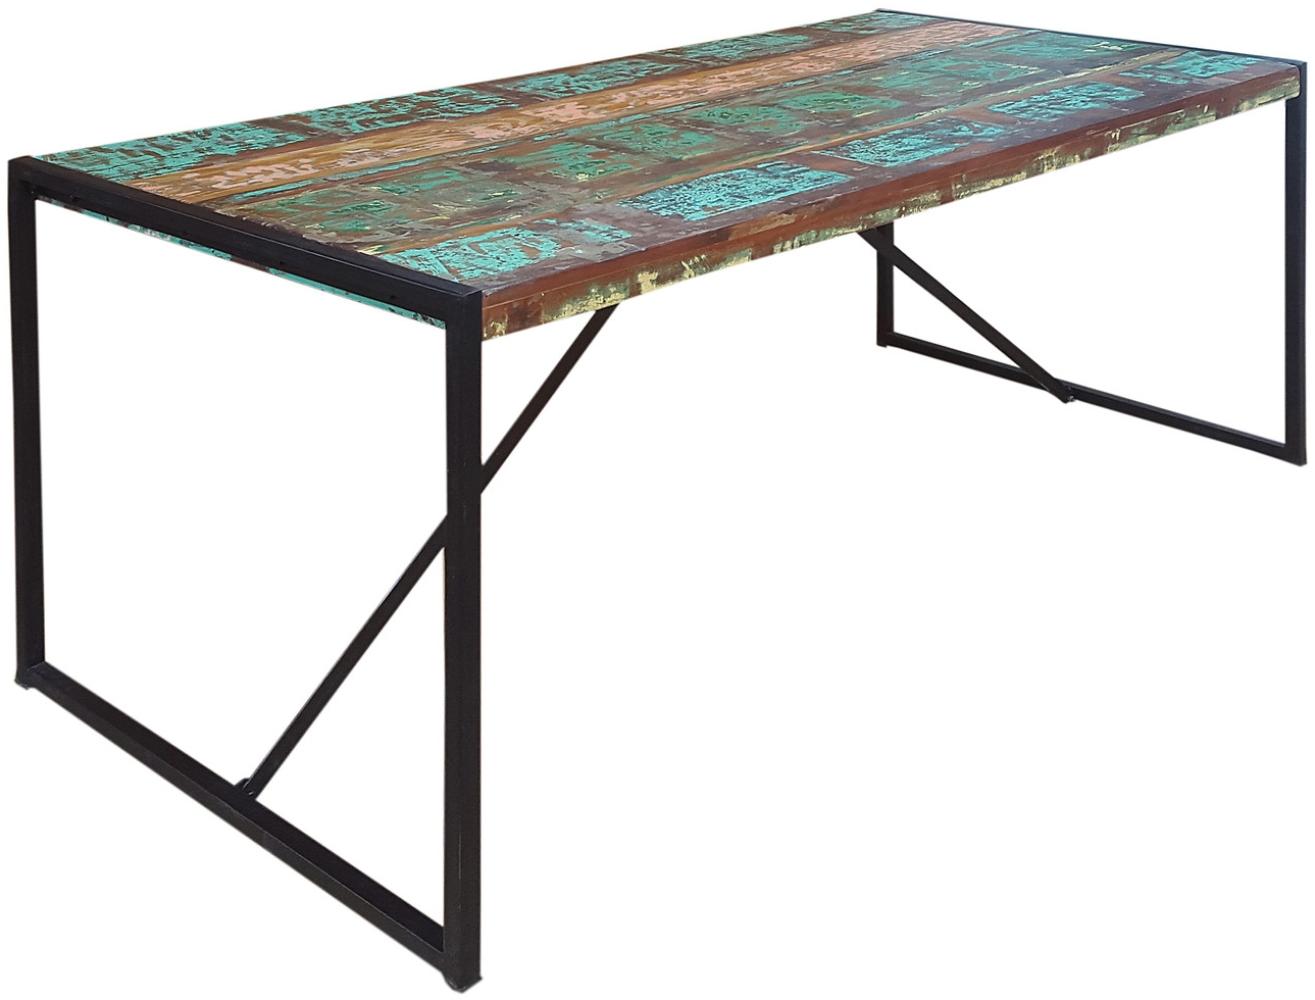 BALI Tisch Recyceltes Altholz Mit Schwarzen Altmetall Und Gebrauchsspuren Bunt Mit Antikschwarz Bild 1